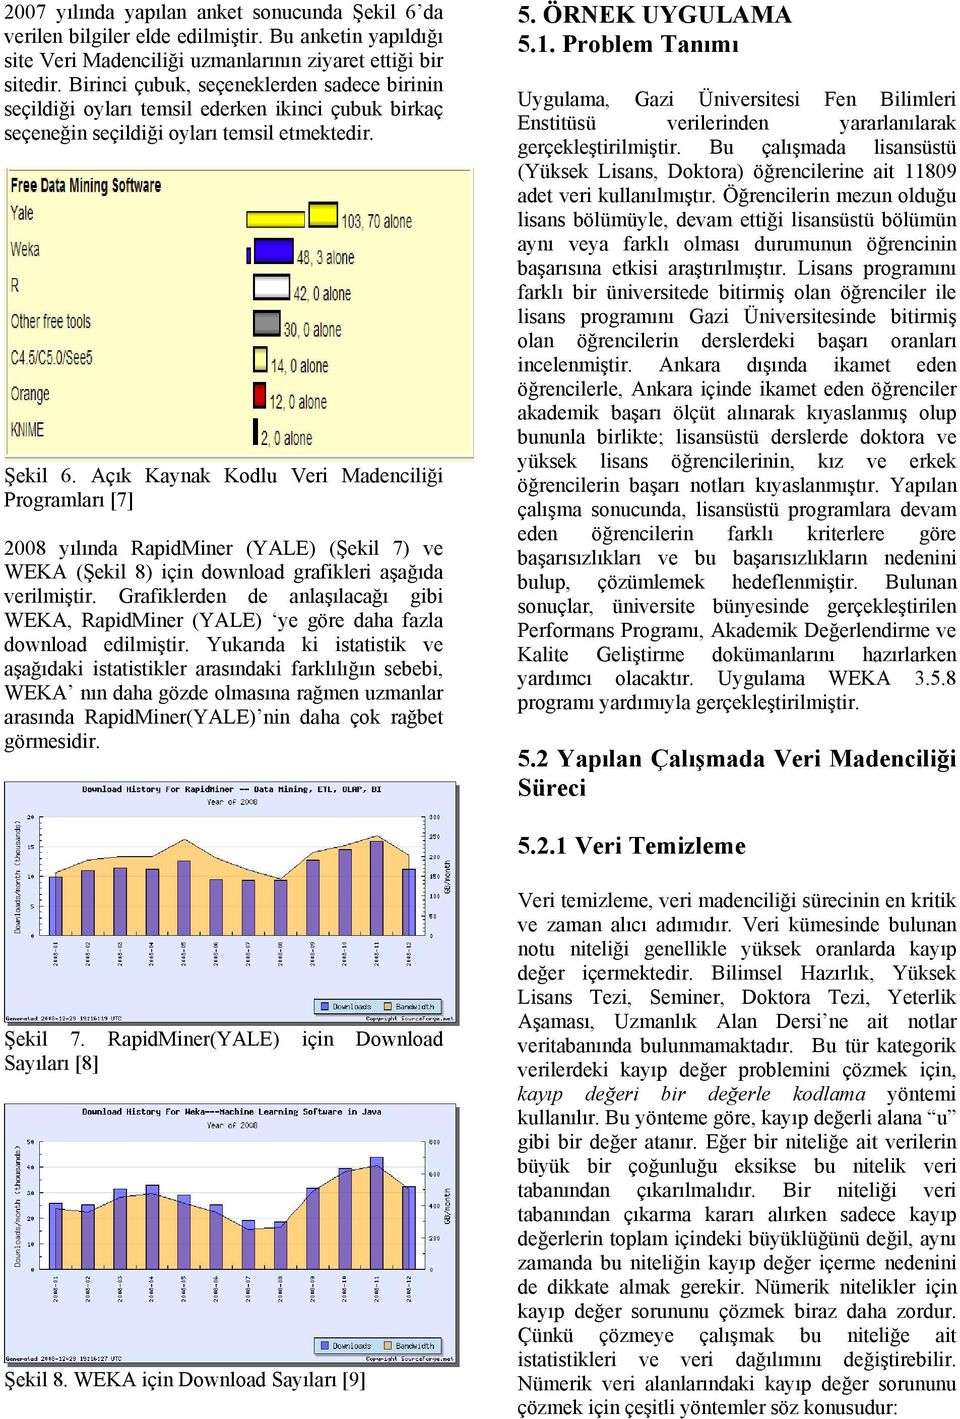 Açık Kaynak Kodlu Veri Madenciliği Programları [7] 2008 yılında RapidMiner (YALE) (Şekil 7) ve WEKA (Şekil 8) için download grafikleri aşağıda verilmiştir.